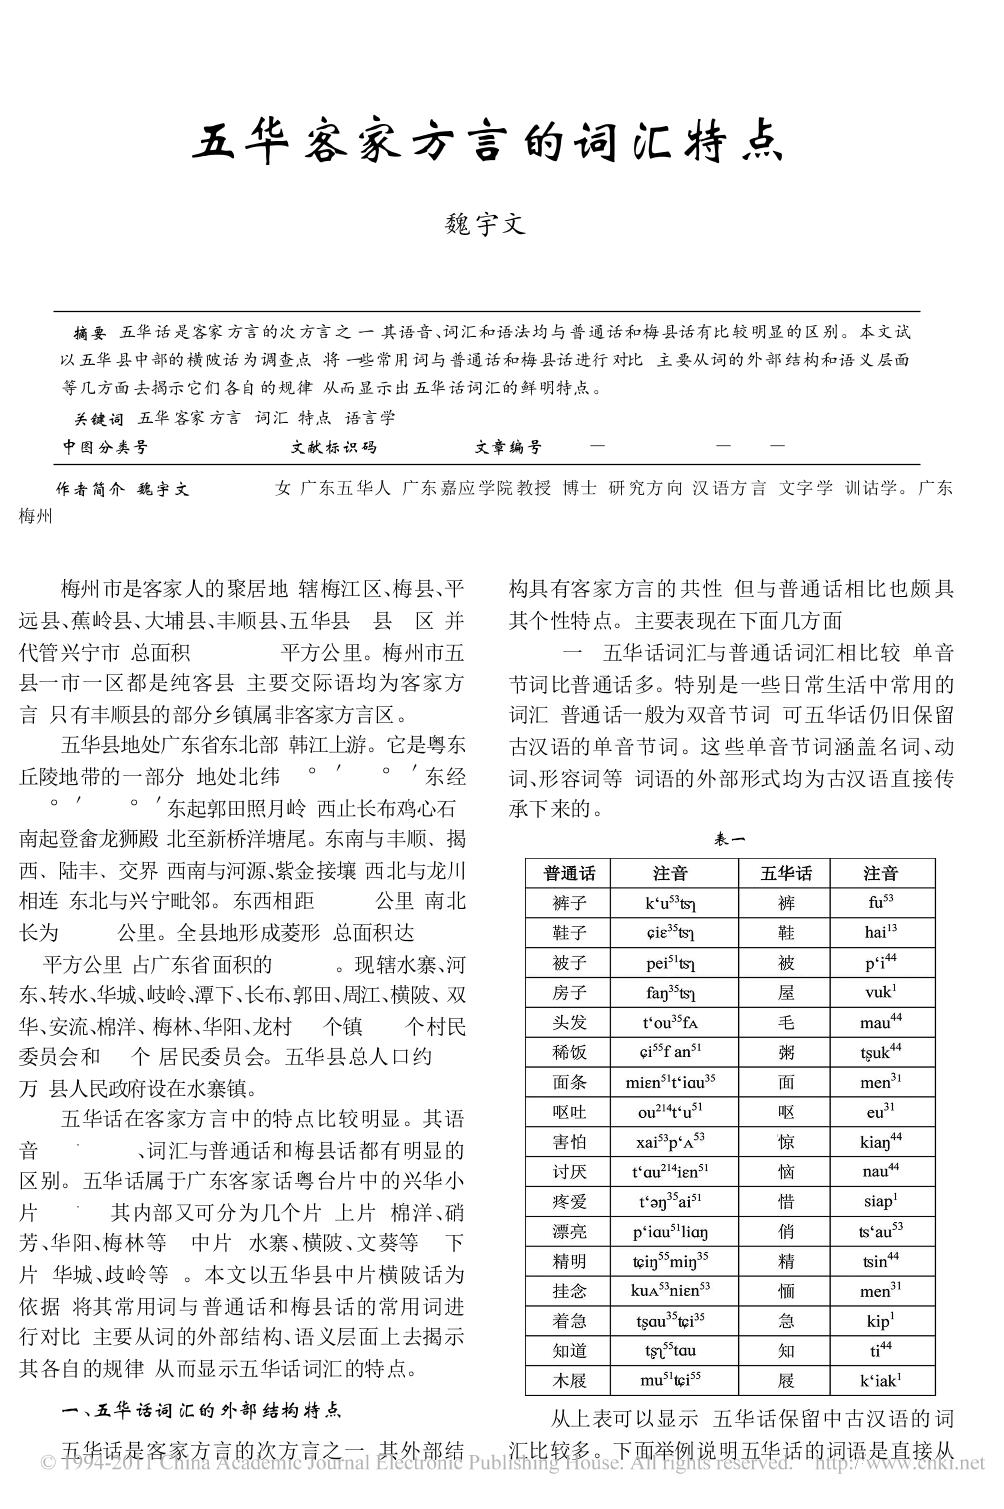 
五华话词汇与普通话和梅县话有比较明显的区别